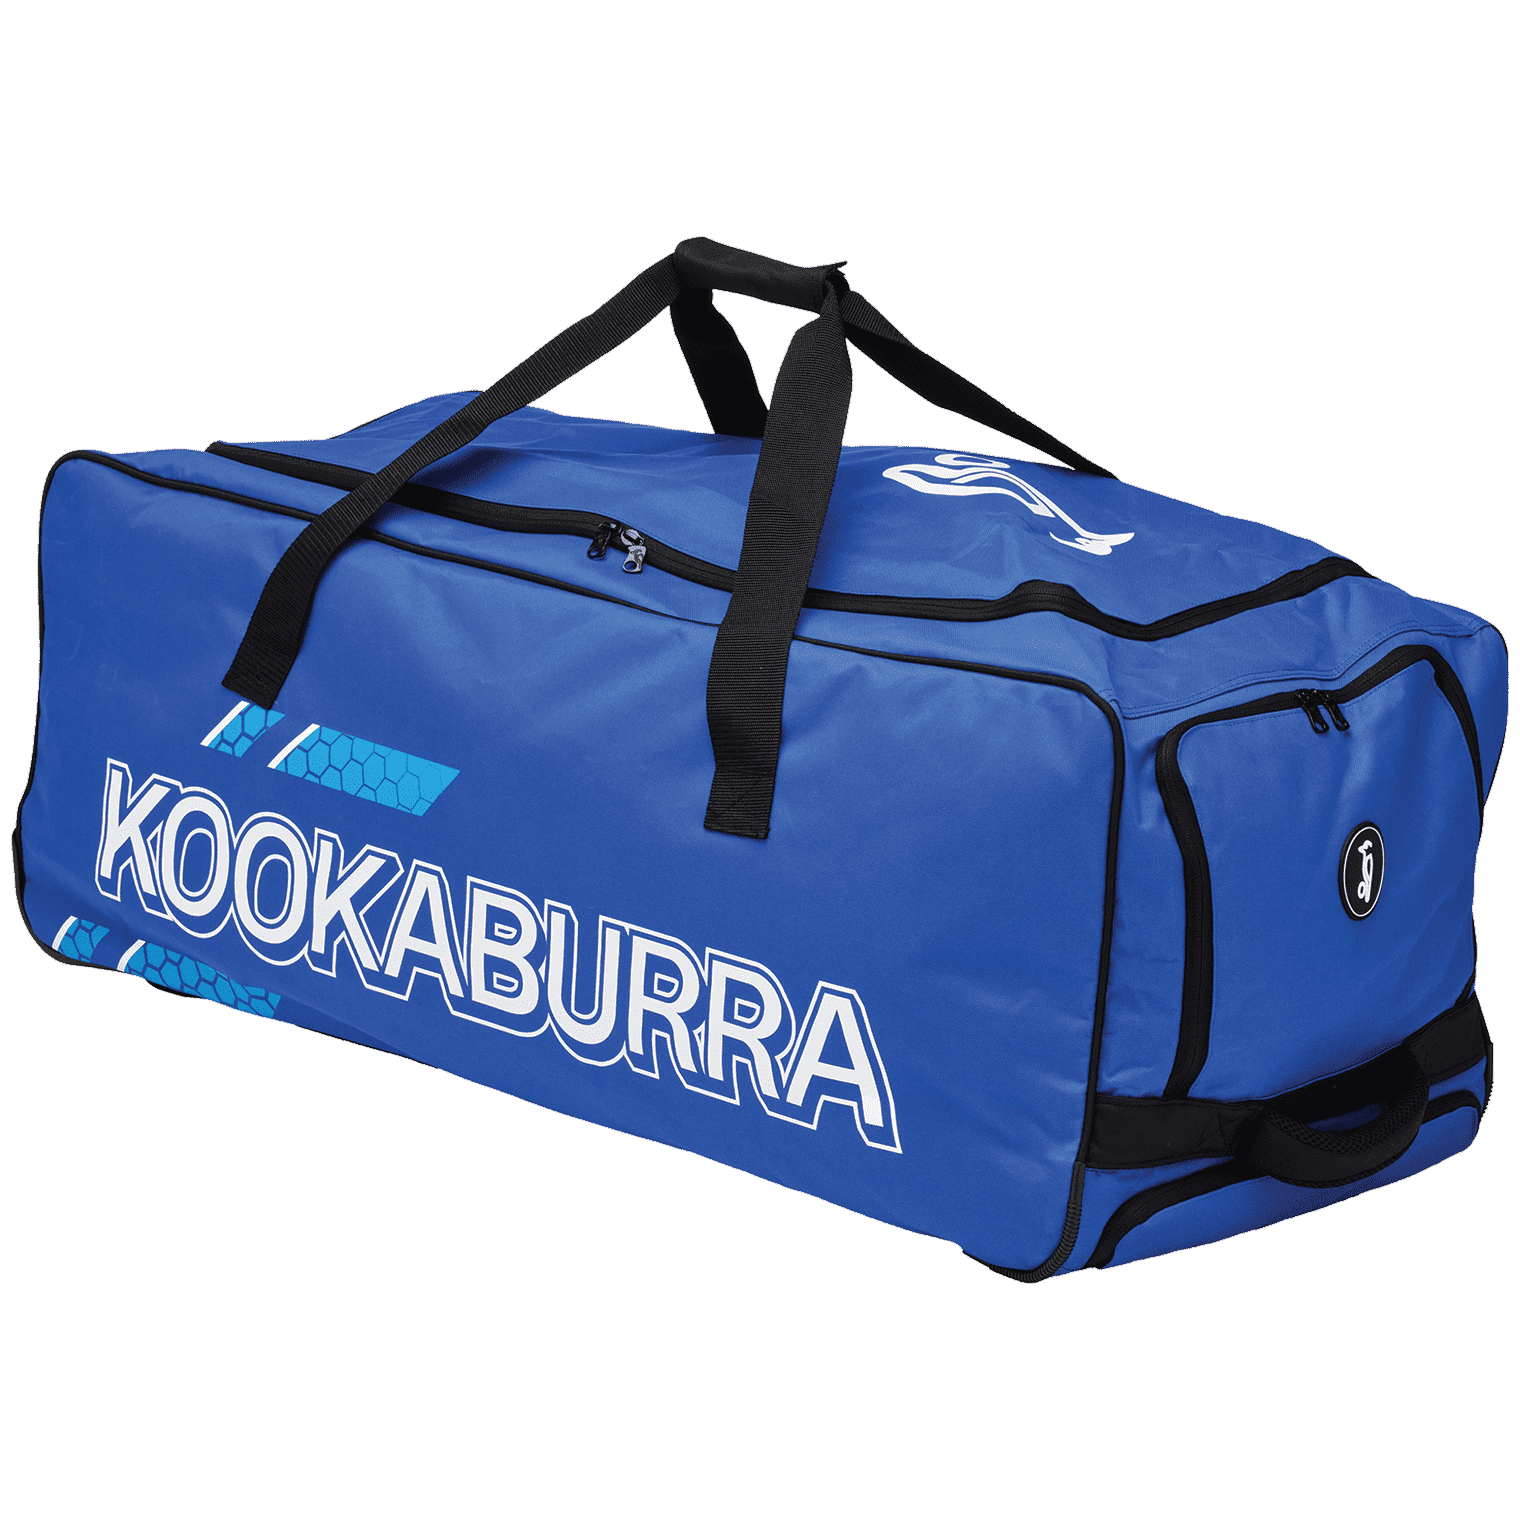 Kookaburra Cricket Bags Blue Kookaburra 2.0 Wheelie Cricket Bag